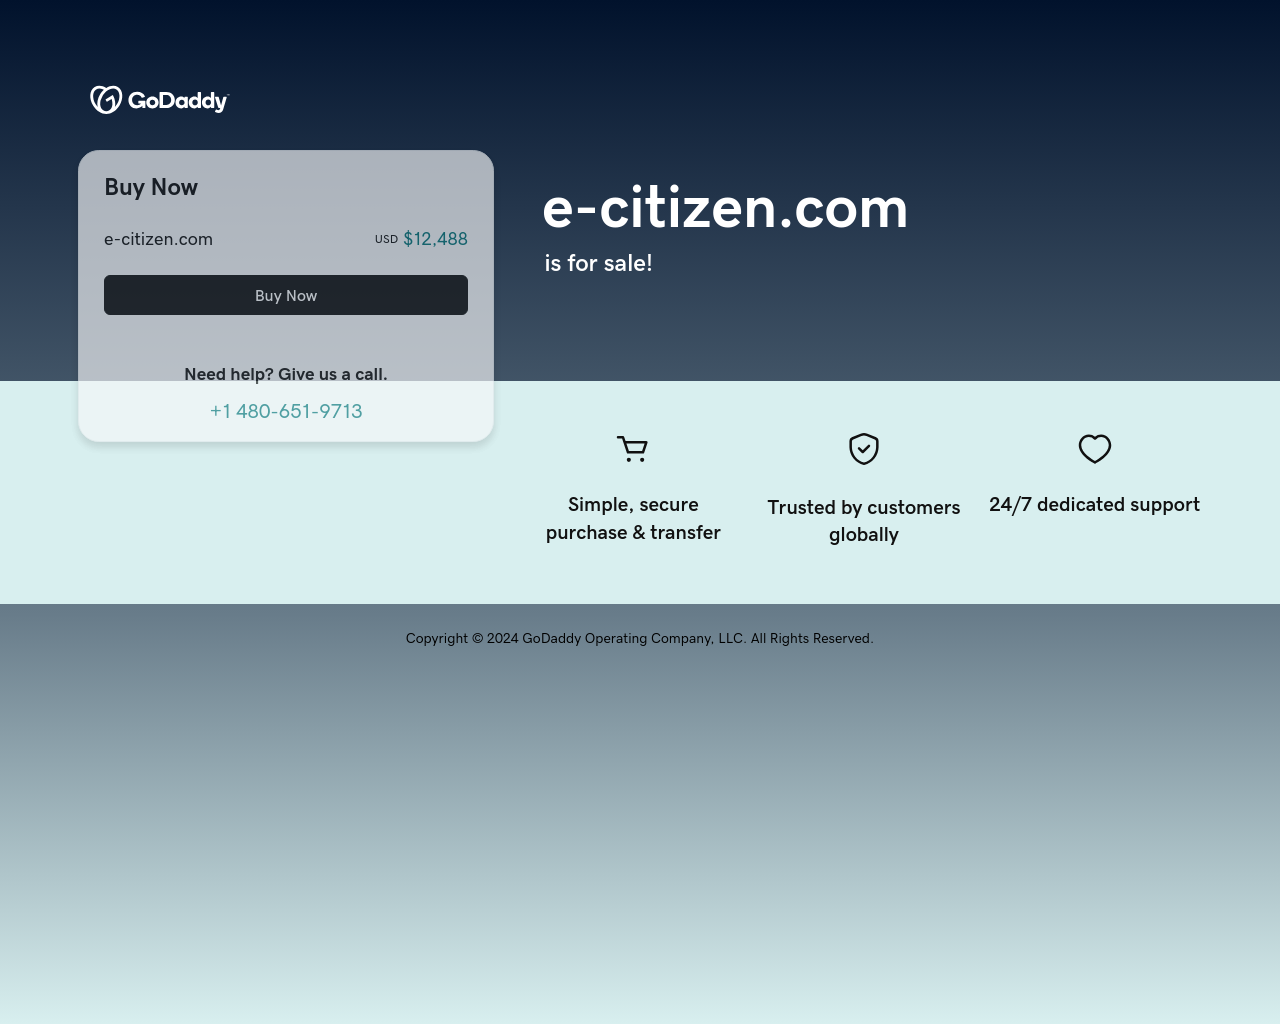 e-citizen.com